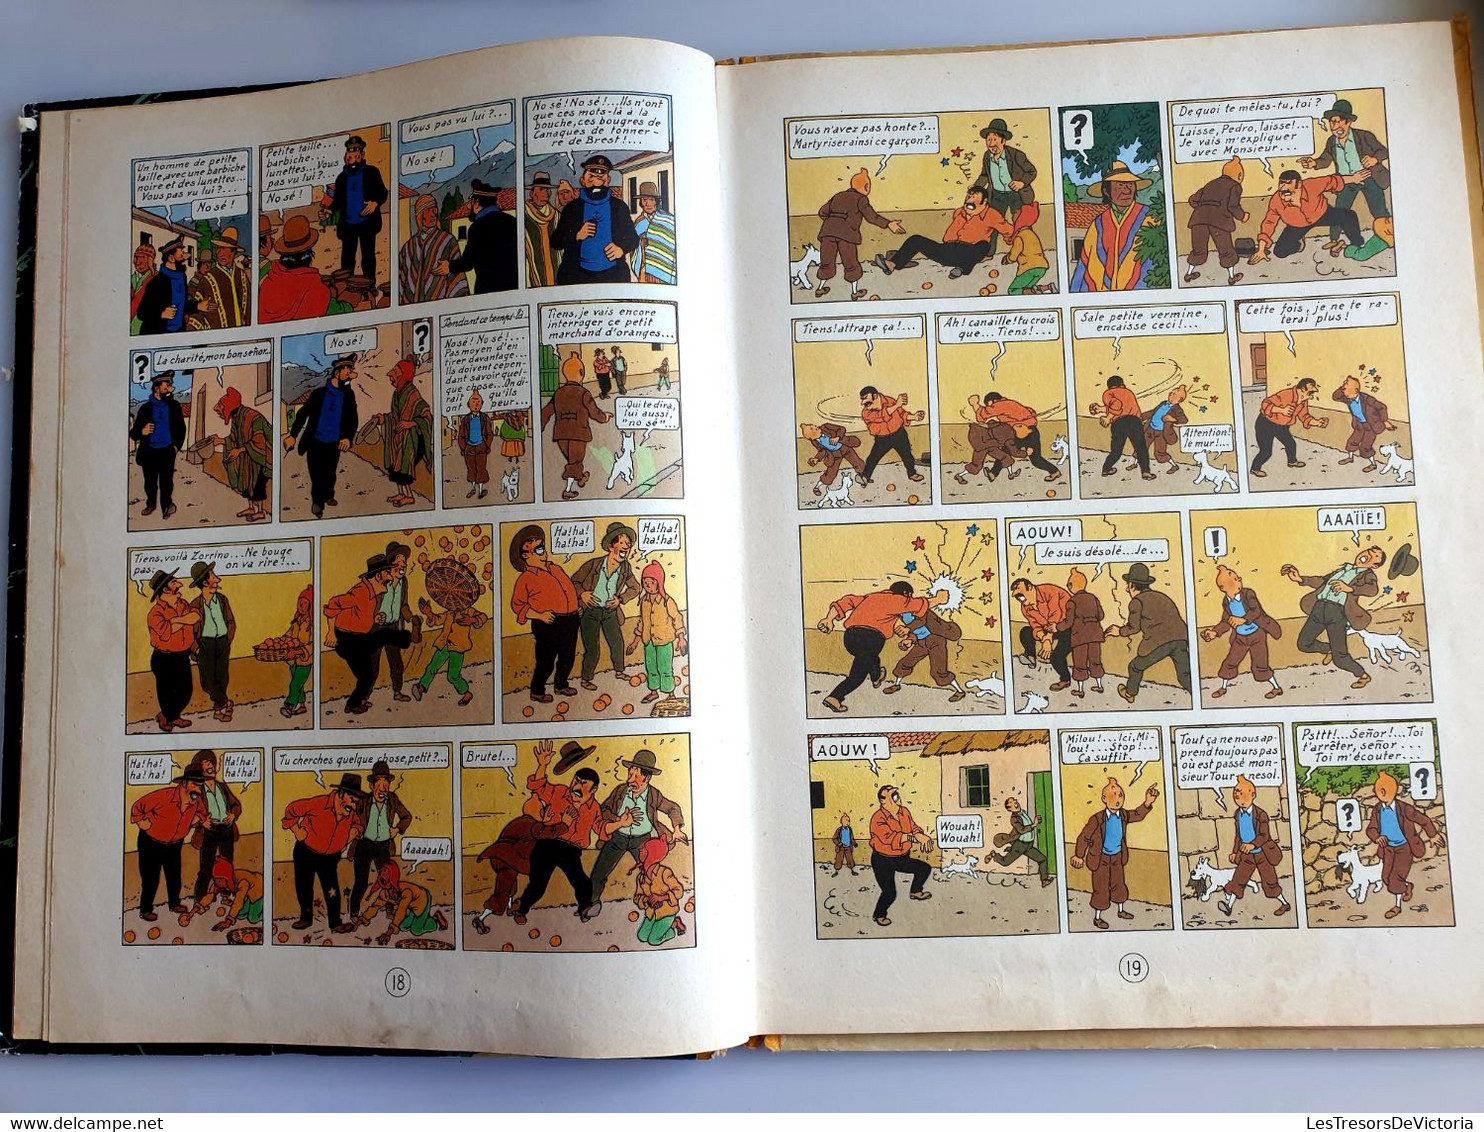 Hergé - Les Aventures De Tintin - Le Temple Du Soleil -  B14 DJ 1955 - Dos Jaune - Cote 100 Euros - Hergé